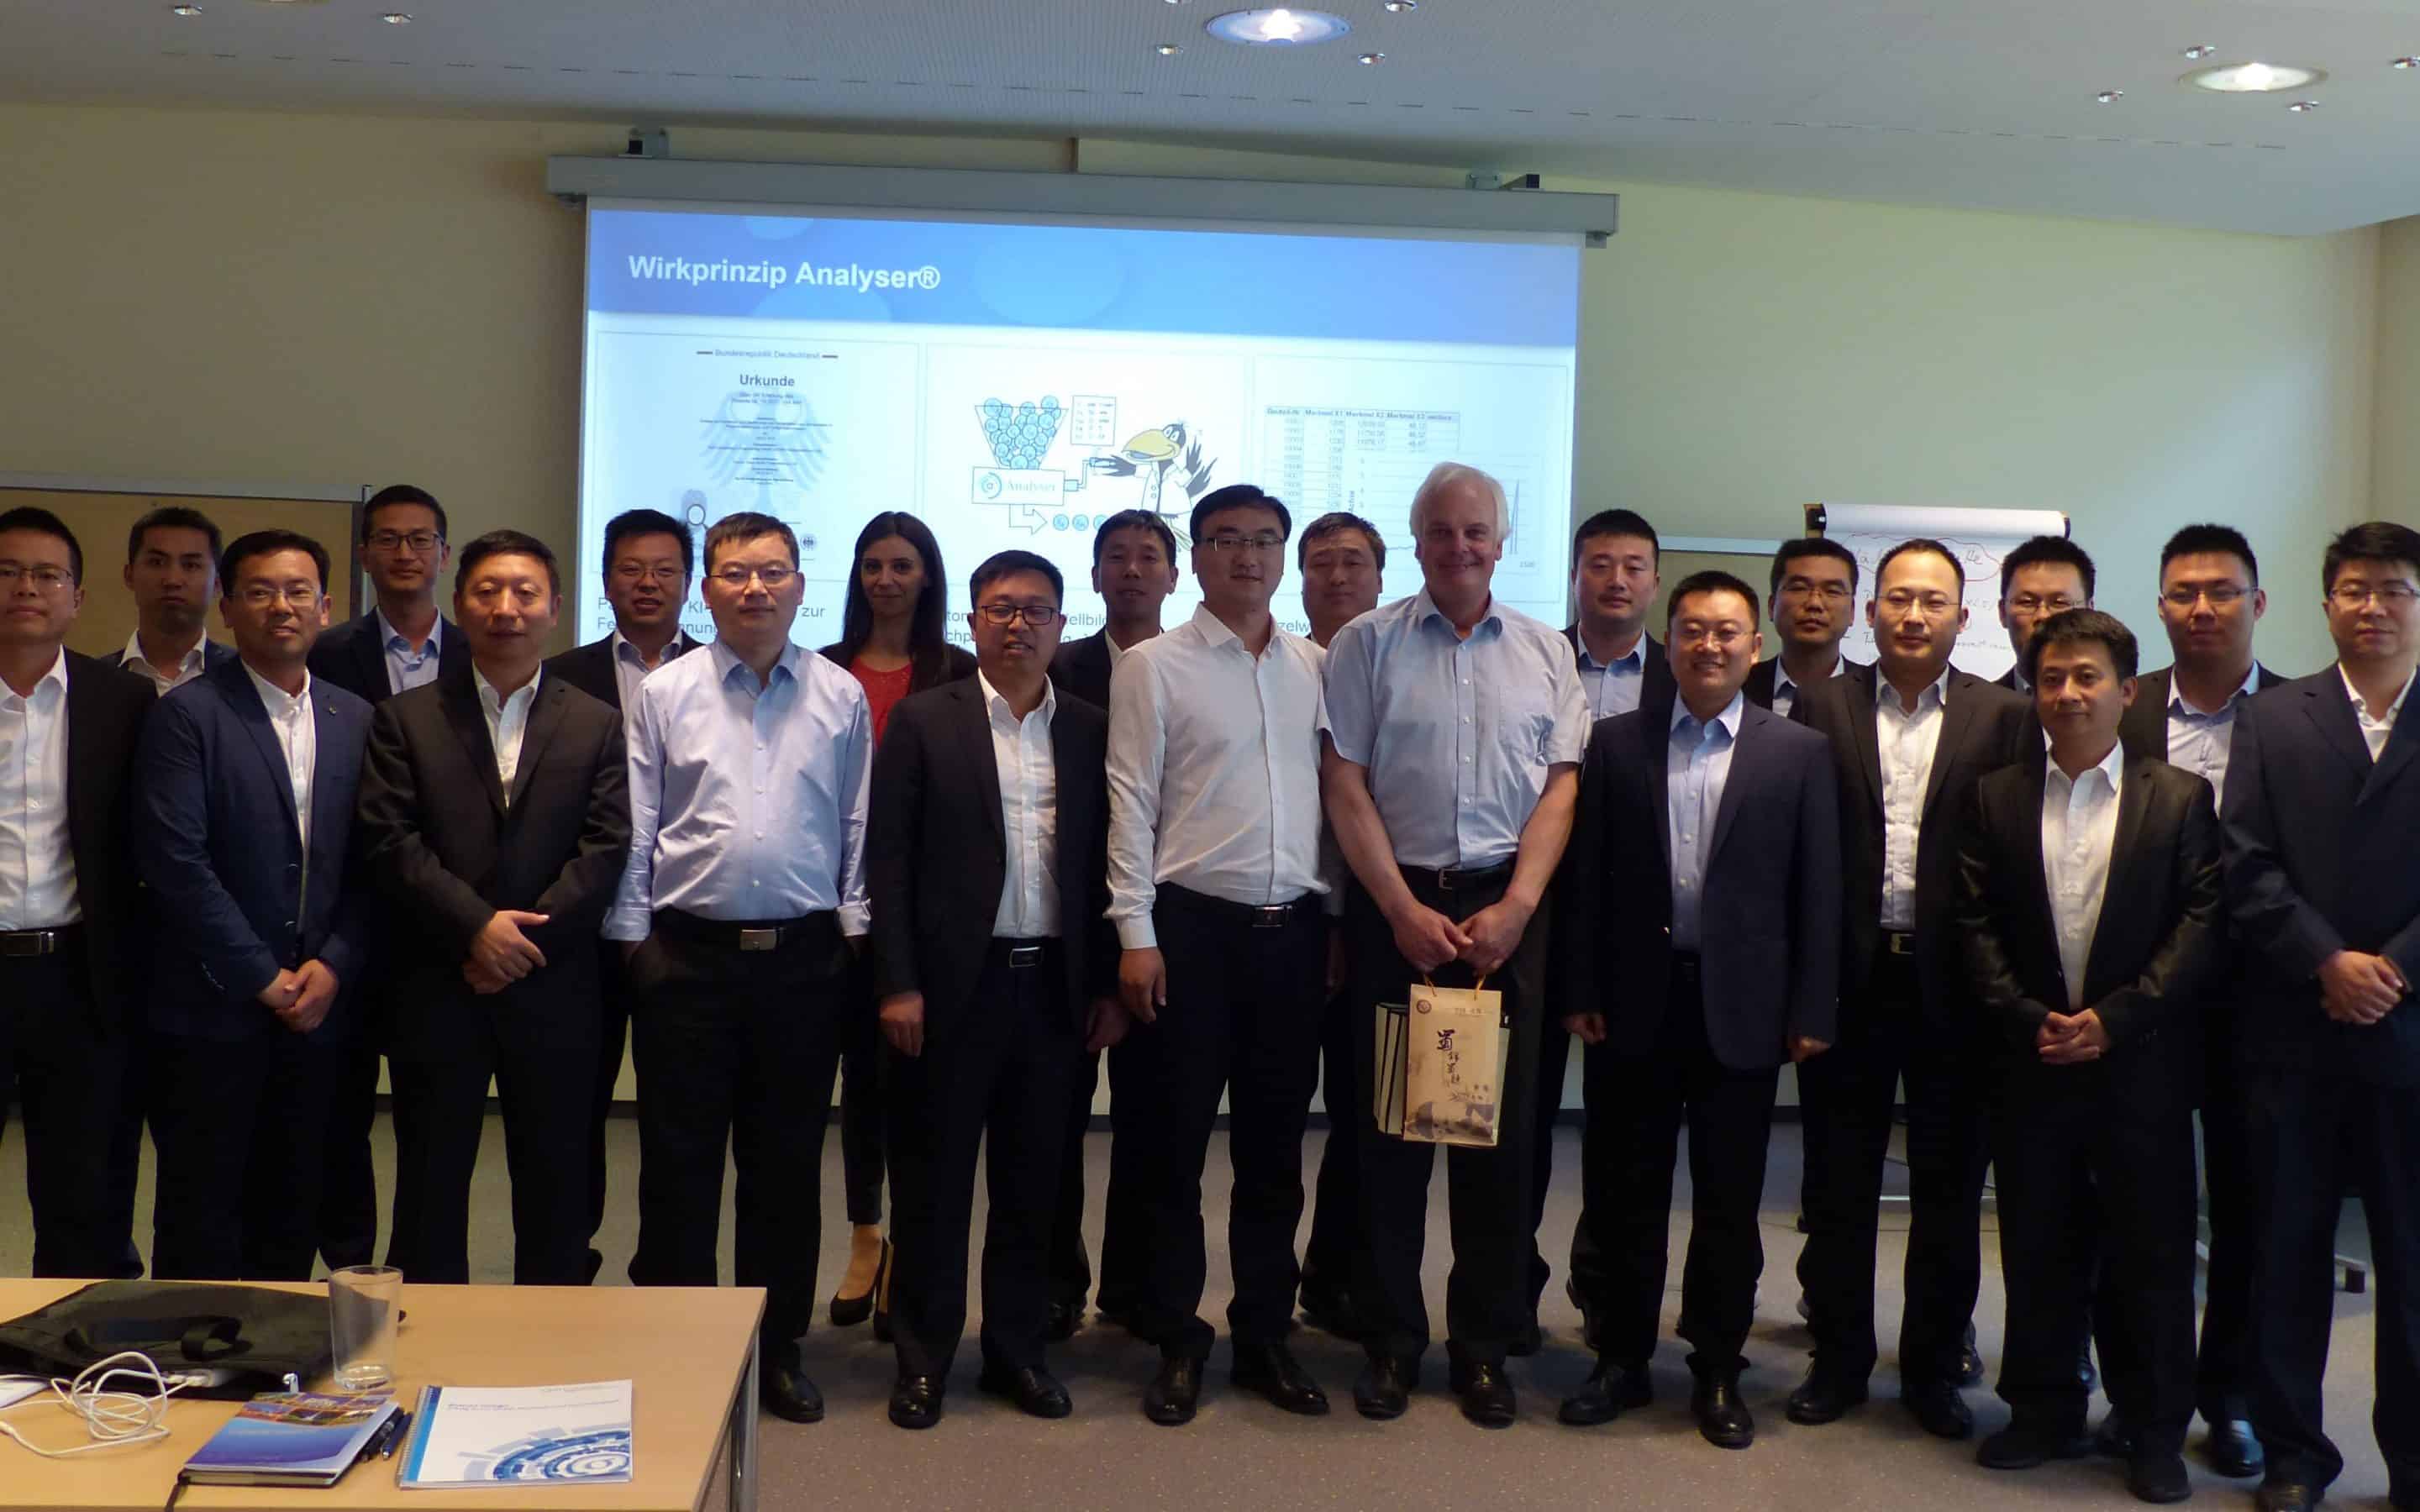 Delegation aus China besucht Contech - KI Analyser für robuste Produke & stabile Prozesse